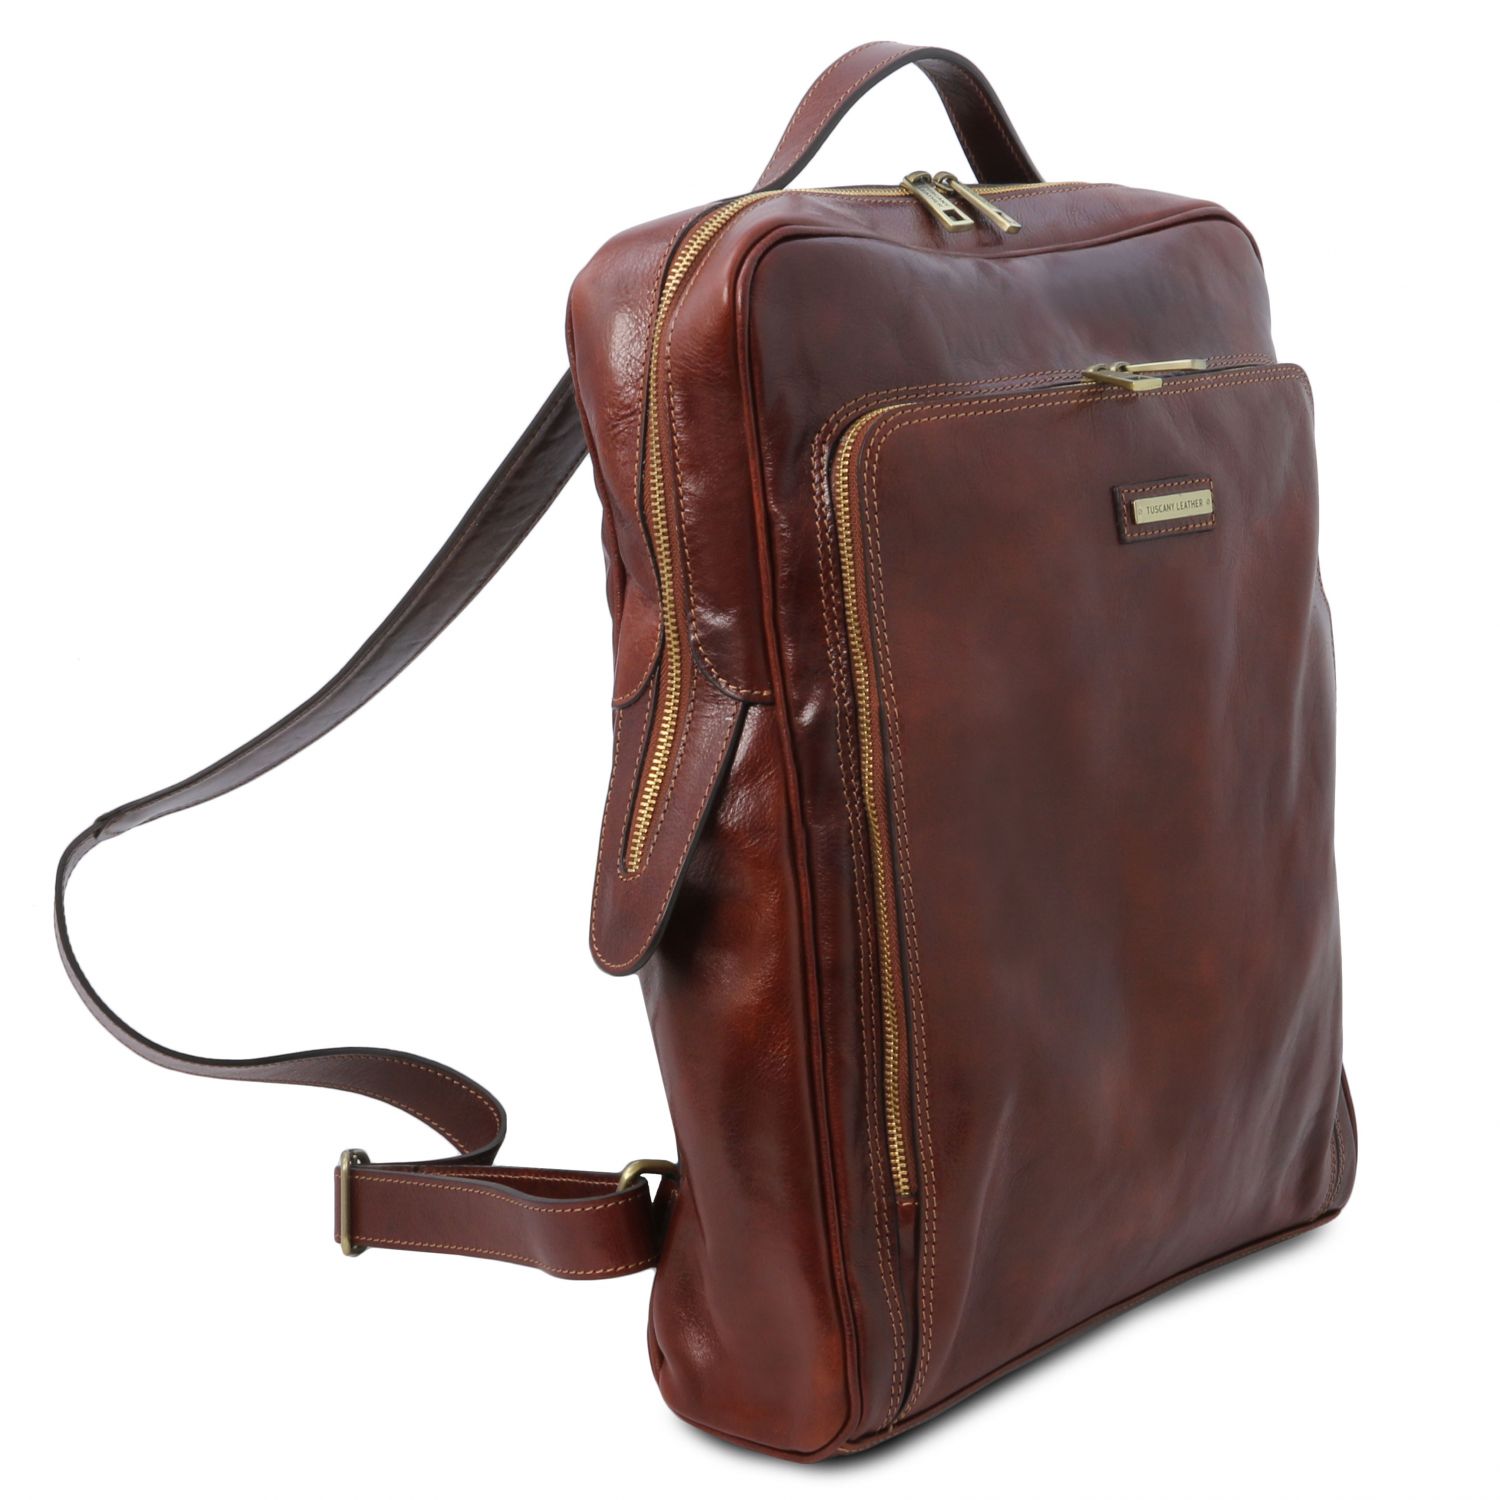 Bangkok Leather laptop backpack - Large size